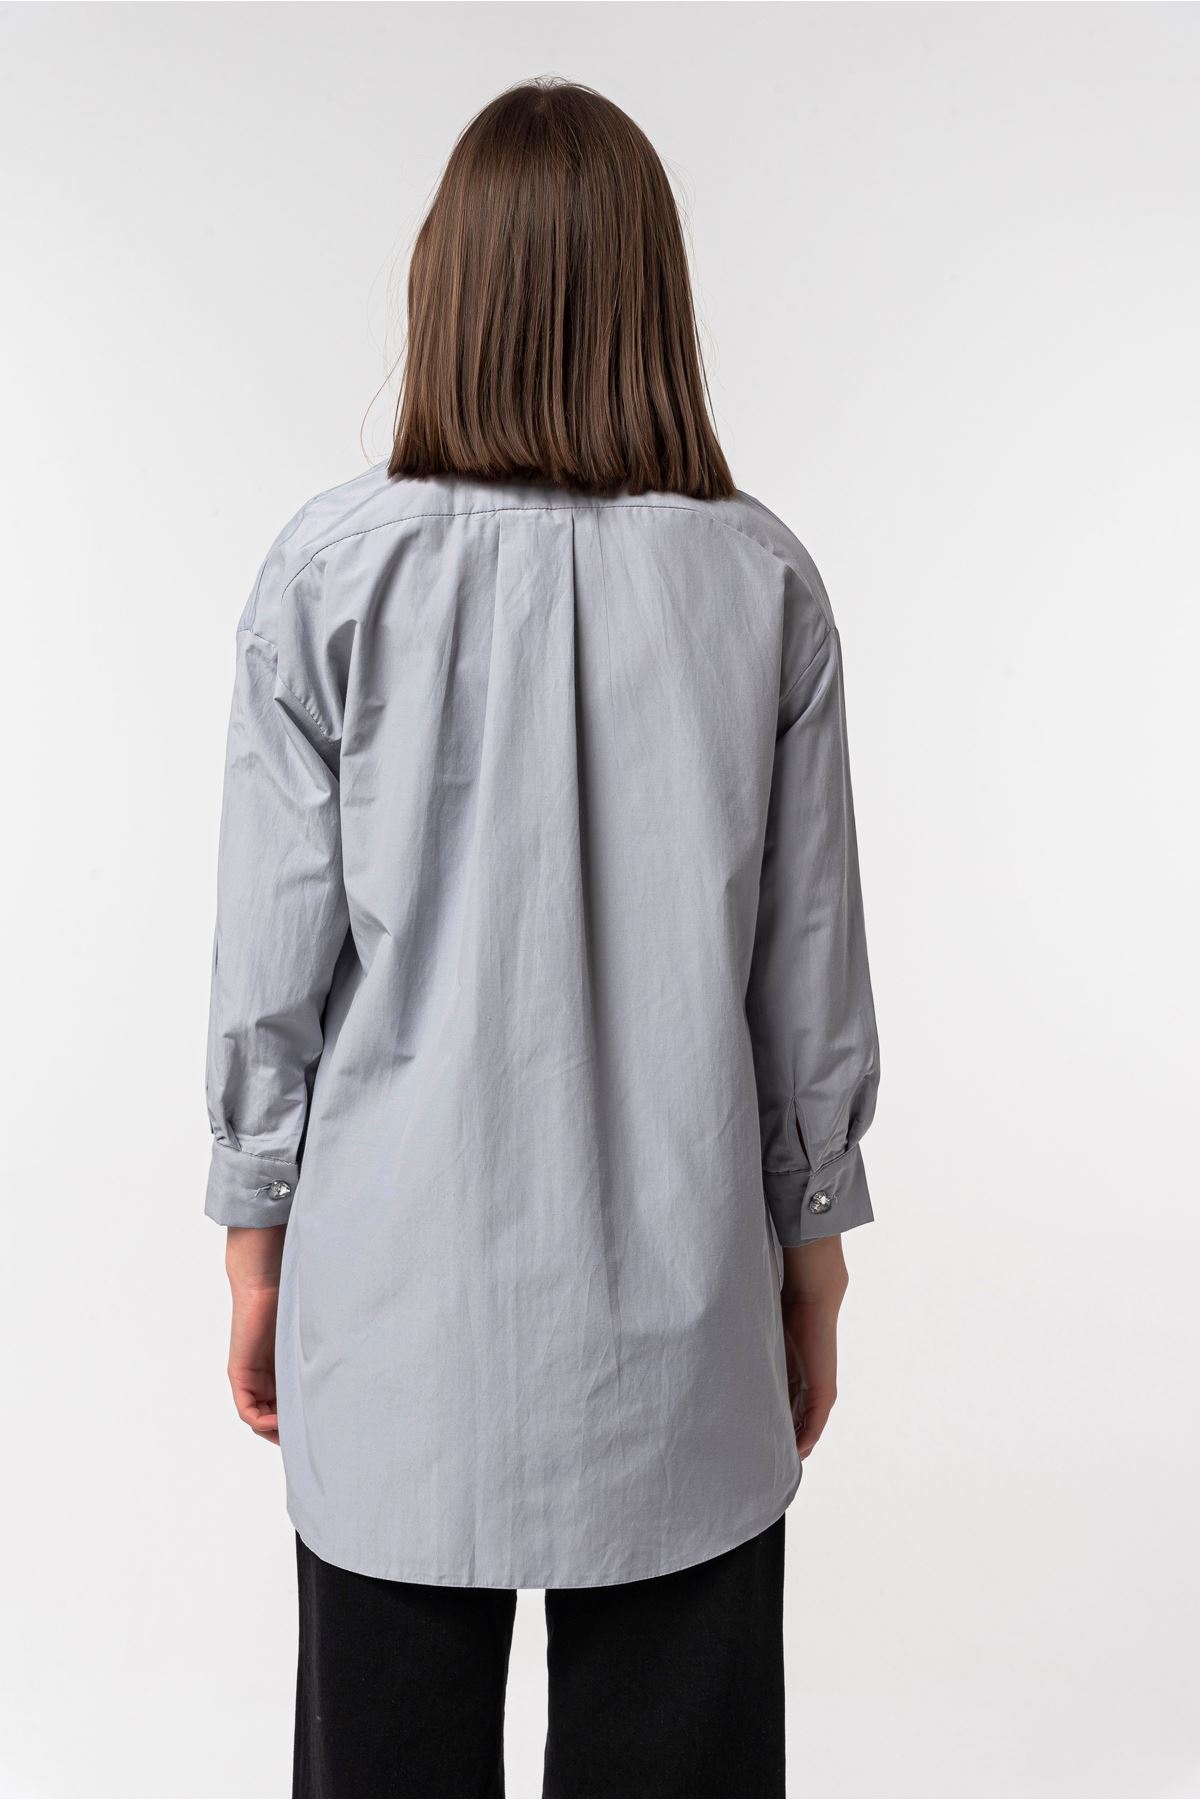 Soft Dokuma Kumaş Oversize/Salaş Düğme Detaylı Kadın Gömlek-Gri